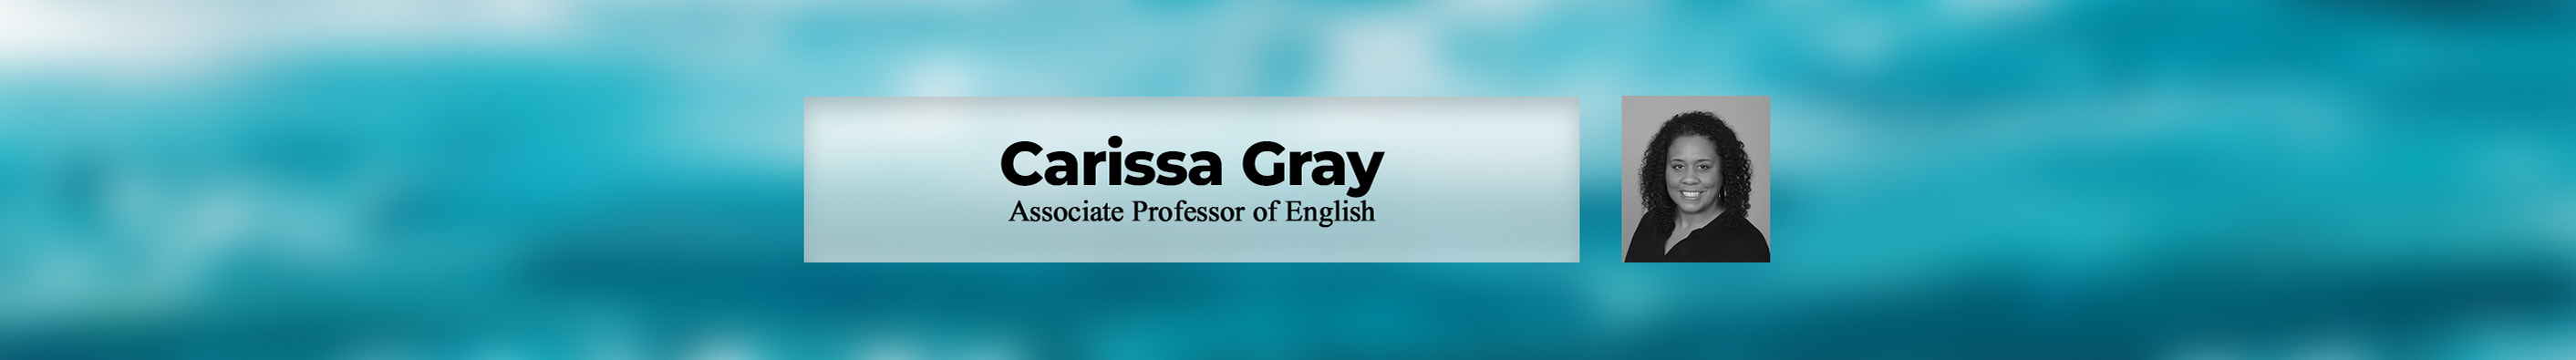 Carissa Gray's profile banner